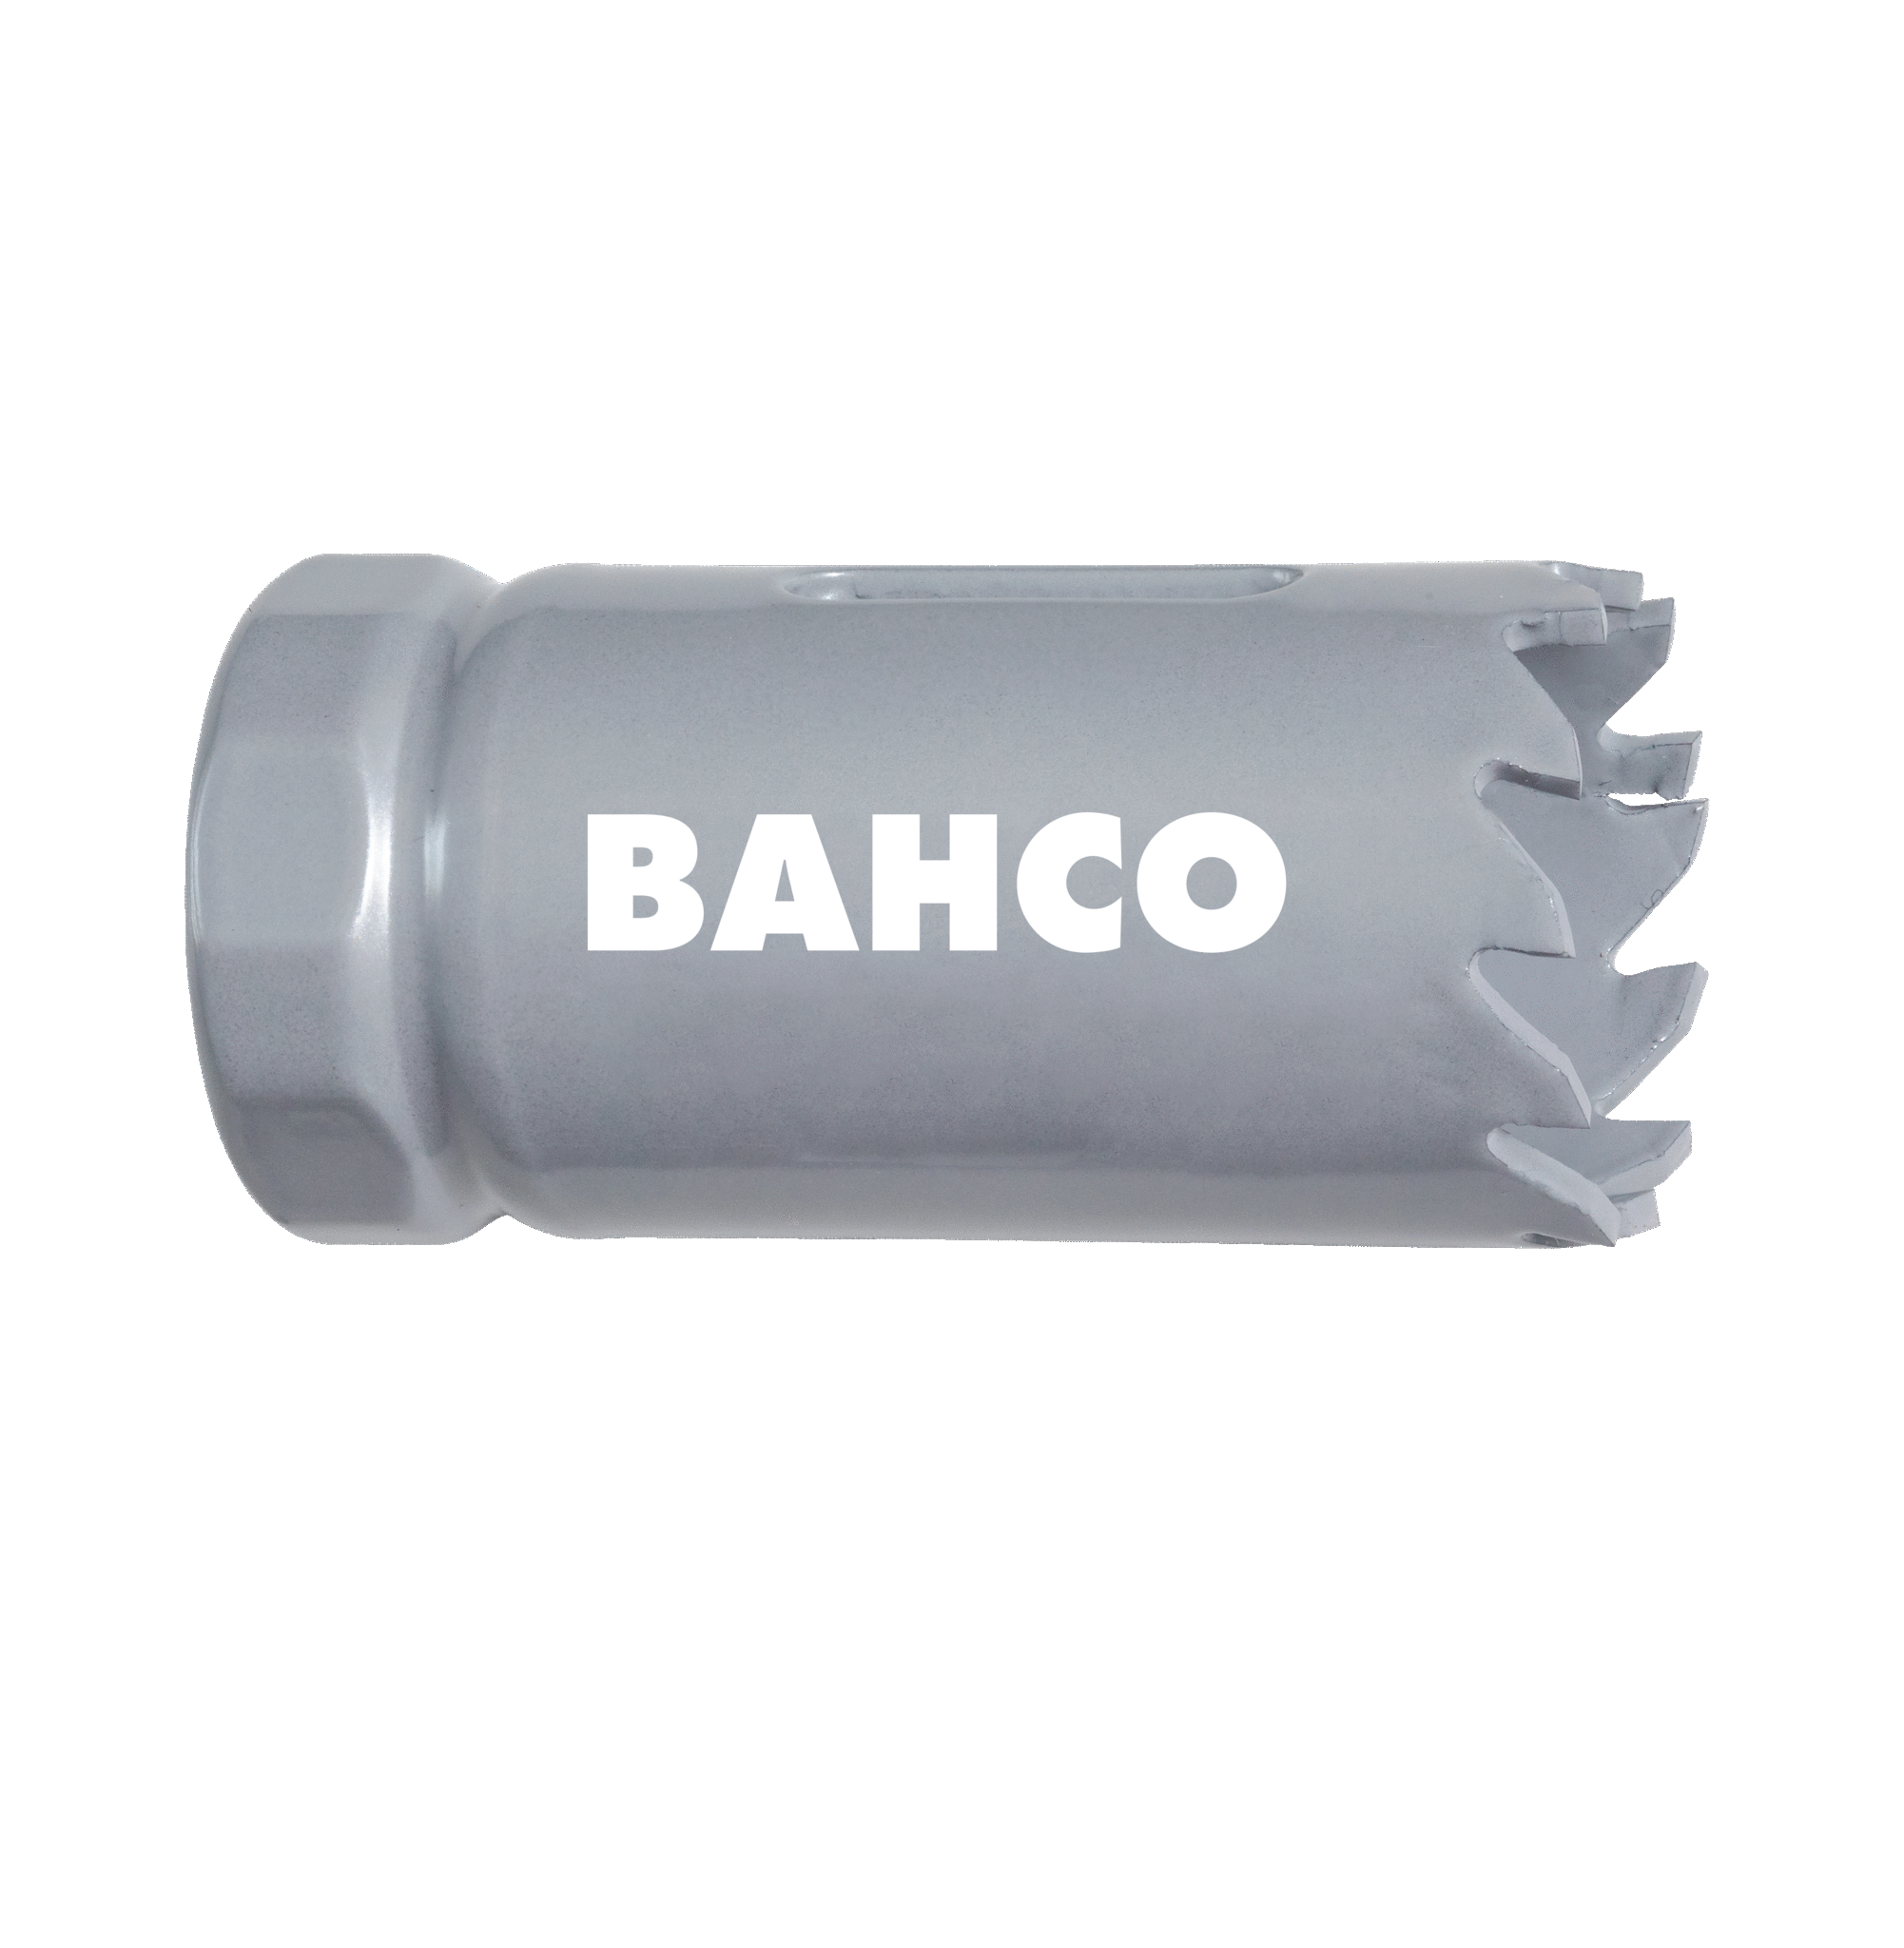 Кольцевые пилы с твердосплавными напайками BAHCO 3832-67